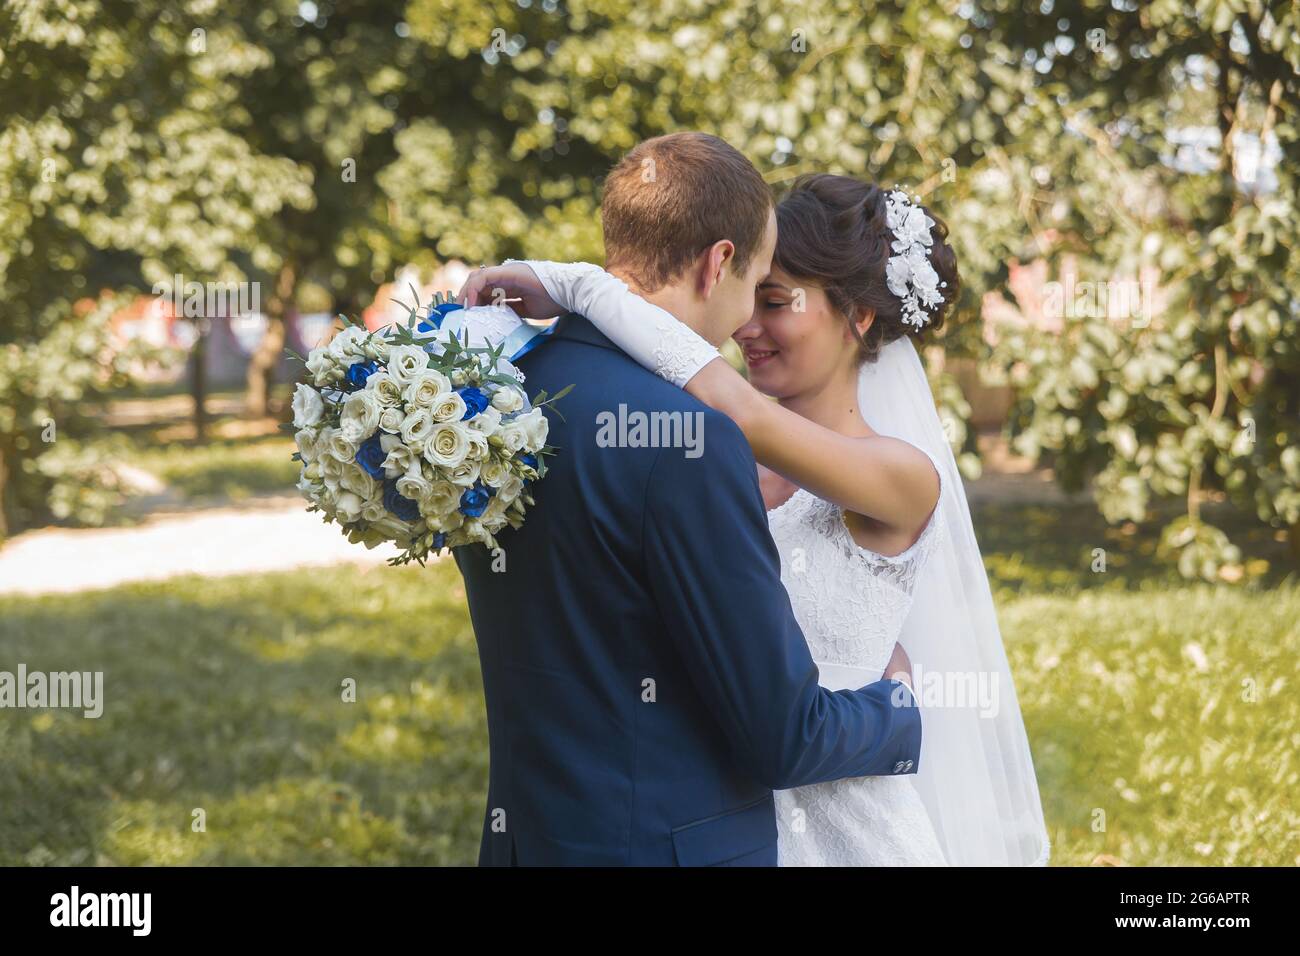 Bélarus, région de Minsk - 11 août 2018 : mariage. Les hugs et la tendresse de la mariée heureuse et marié sur une promenade dans le parc extérieur arrière-plan. Banque D'Images